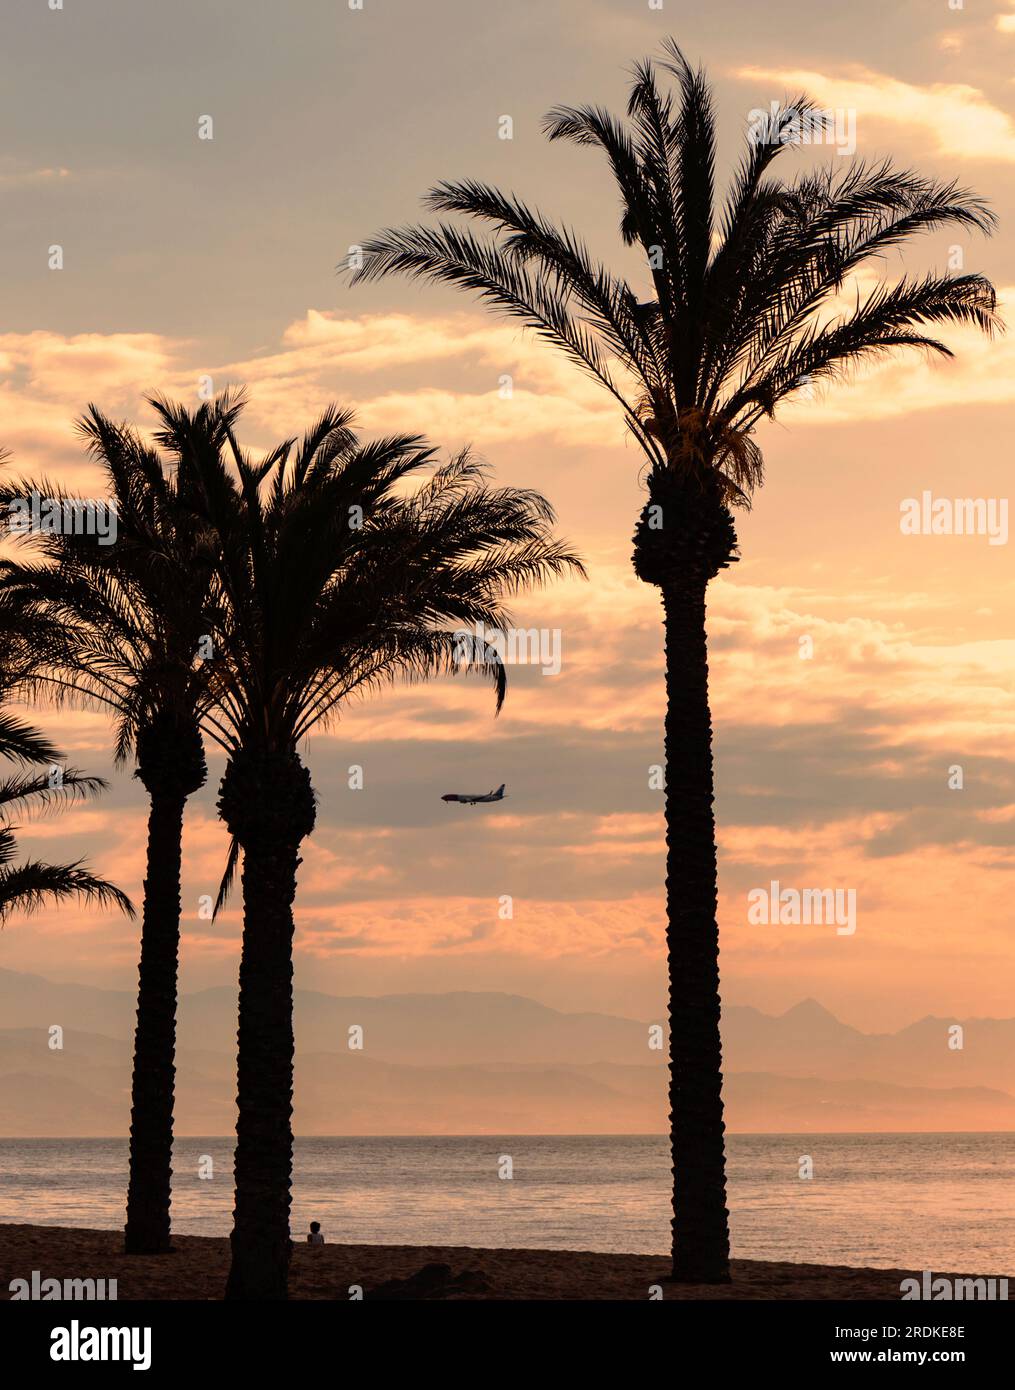 Torremolinos, Costa del sol, province de Malaga, Andalousie, sud de l'Espagne. Lever du soleil. Vue sur les palmiers de la baie de Malaga depuis la plage Playamar avec aeropla Banque D'Images